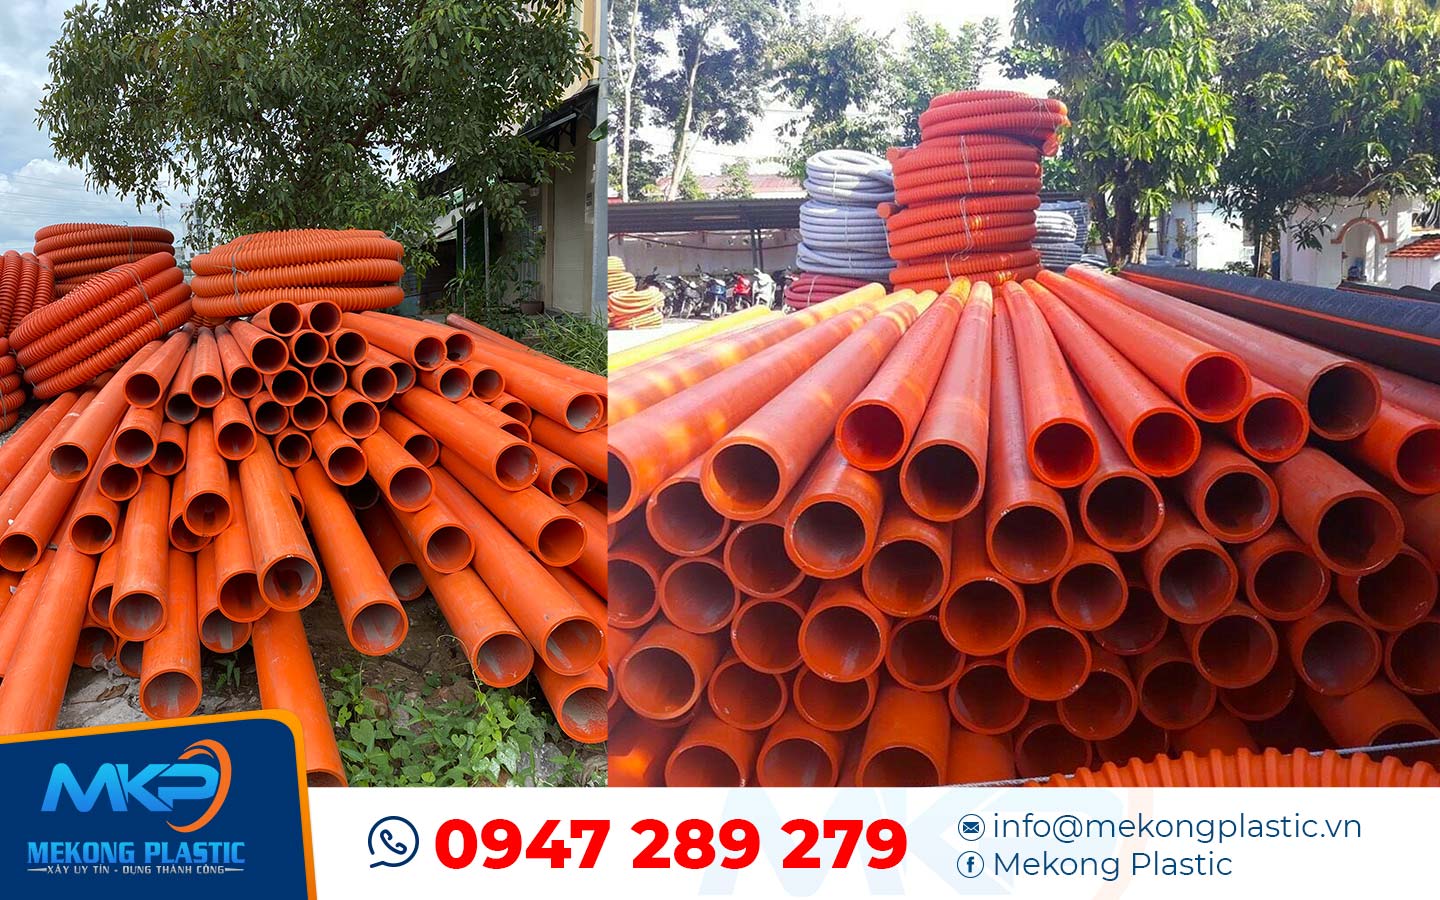 Những lưu ý khi chọn mua ống nhựa gân xoắn HDPE - Mekong Plastic